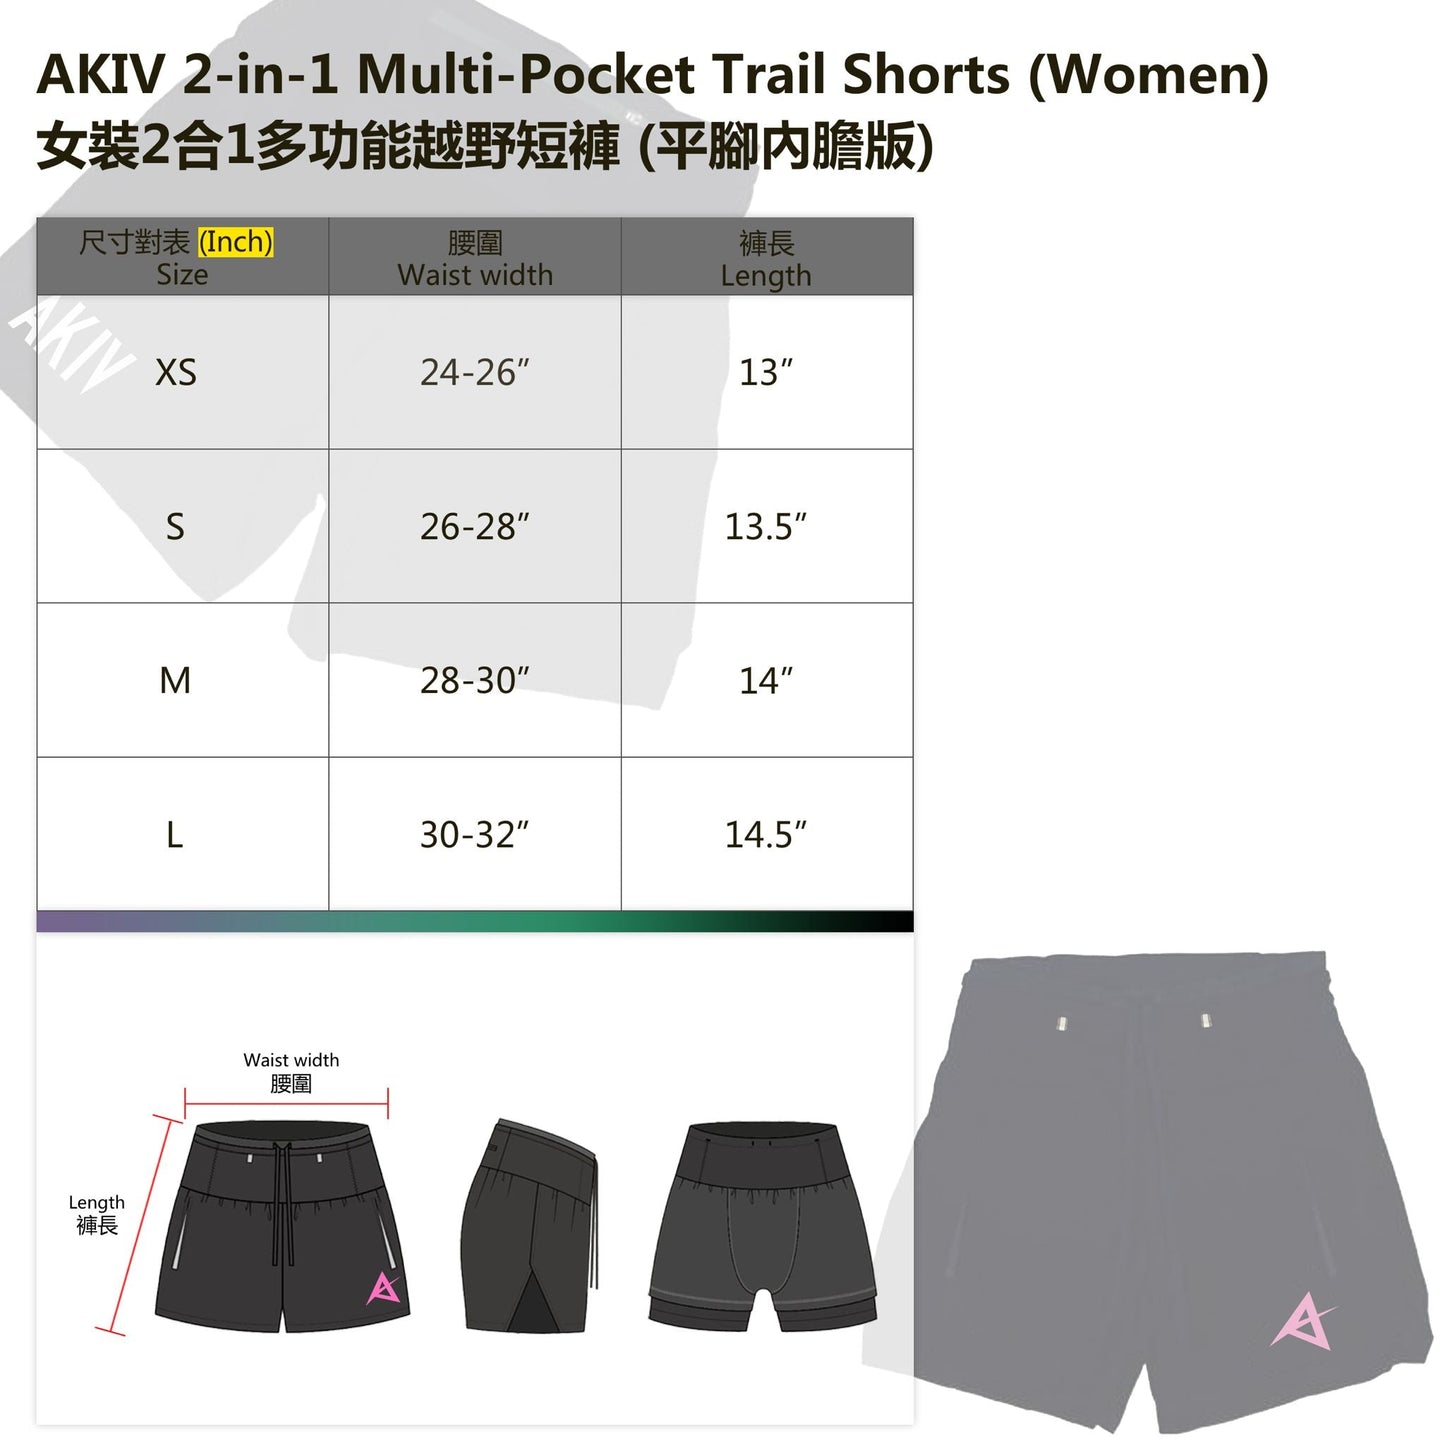 【屯門牛】 AKIV 2-in-1 TRAIL RUNNING SHORTS (Women) - PINK